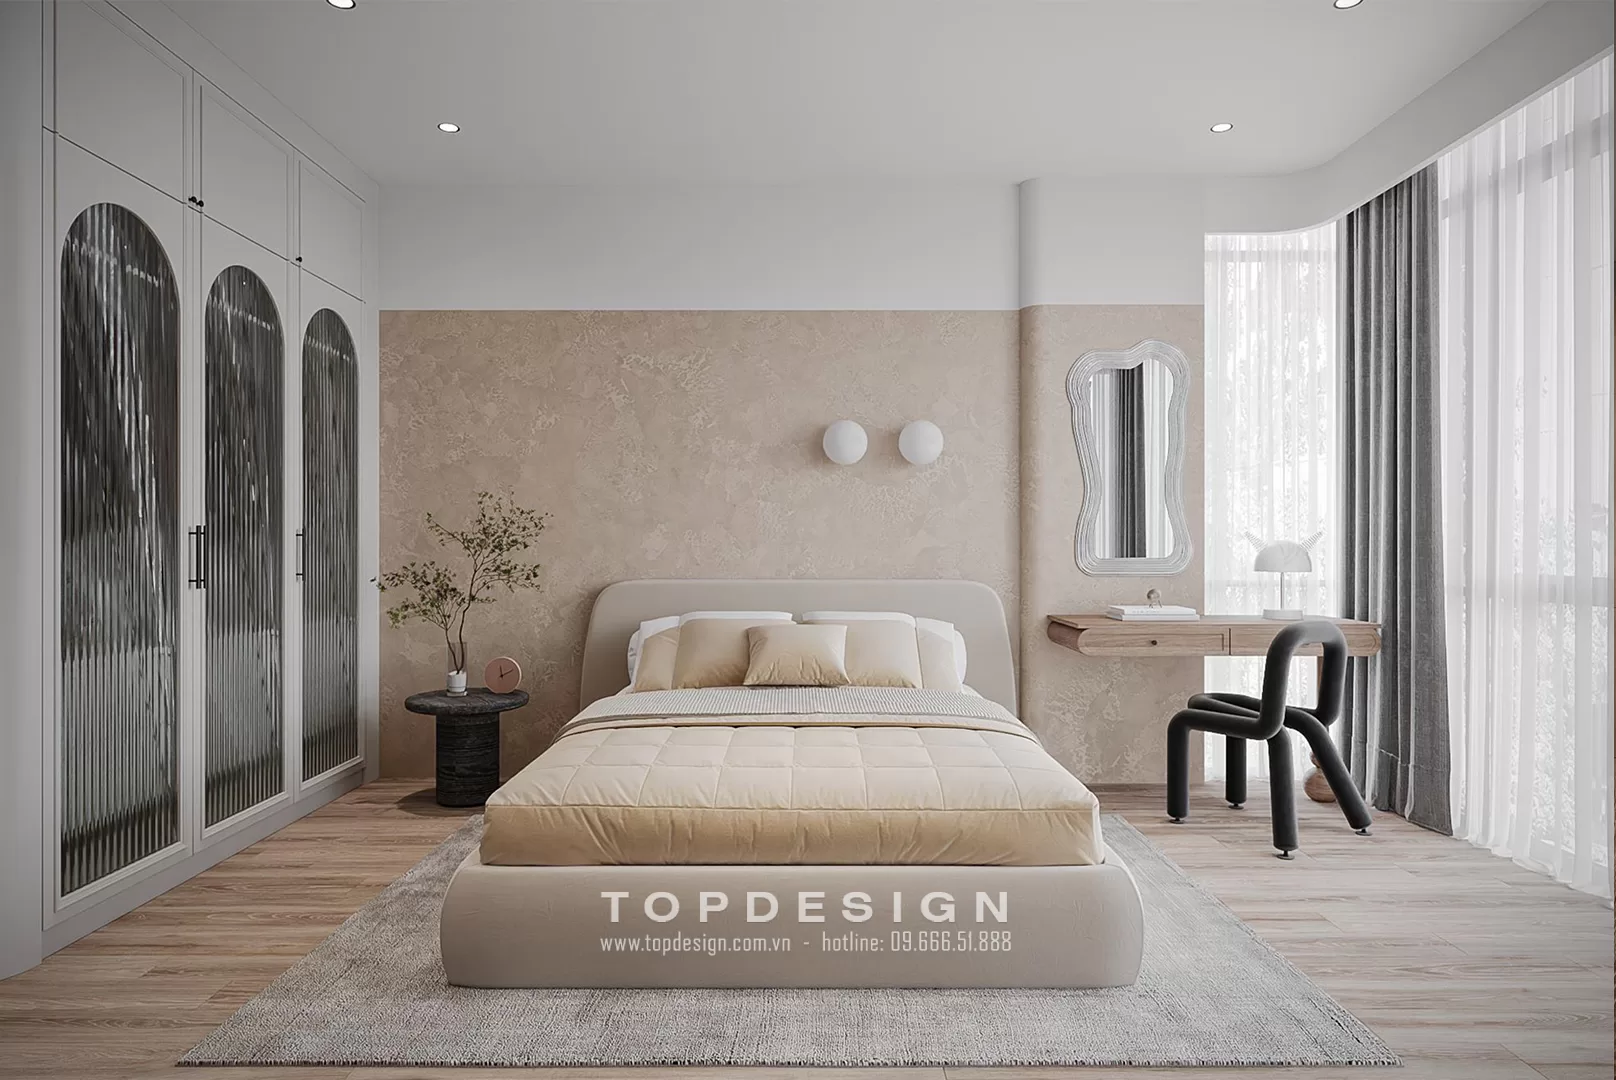 Thiết kế nội thất nhà phố hiện đại - TOPDESIGN - 4